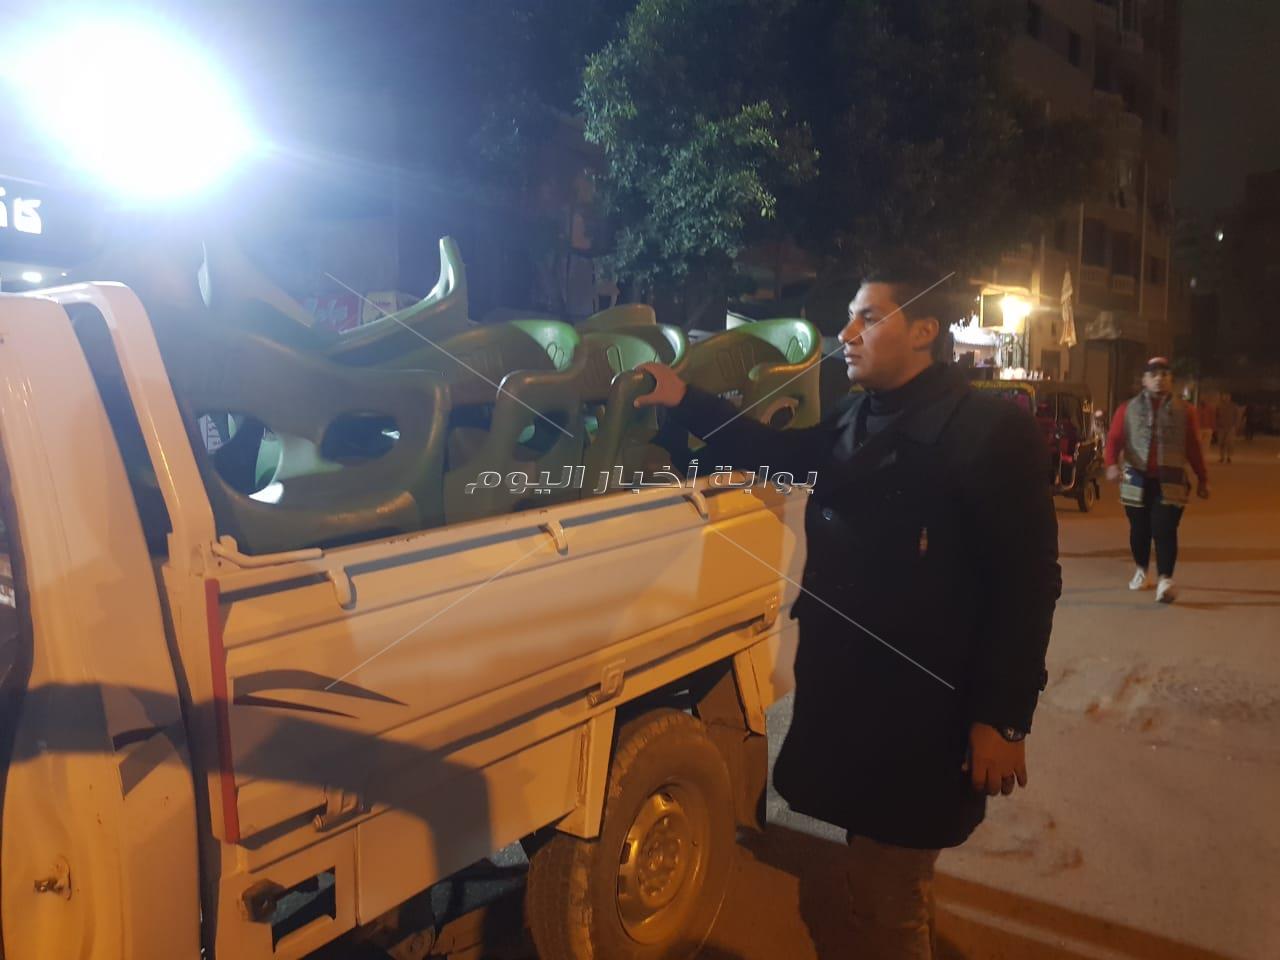 حملة إشغالات ليلية على شوارع بولاق الدكرور